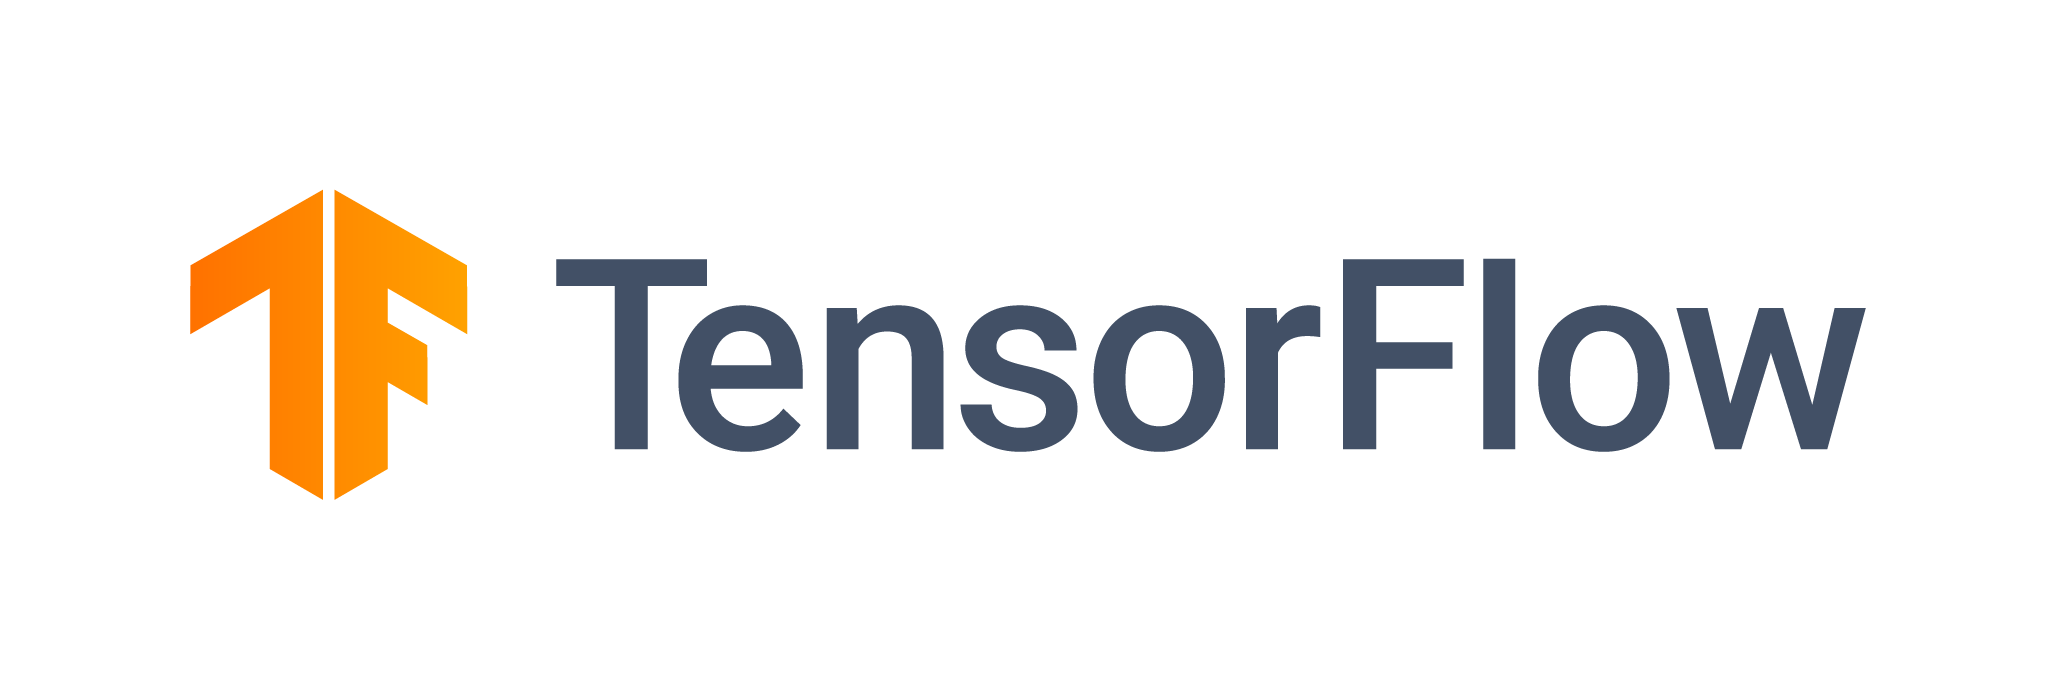 ../_images/tensorflow_logo.png